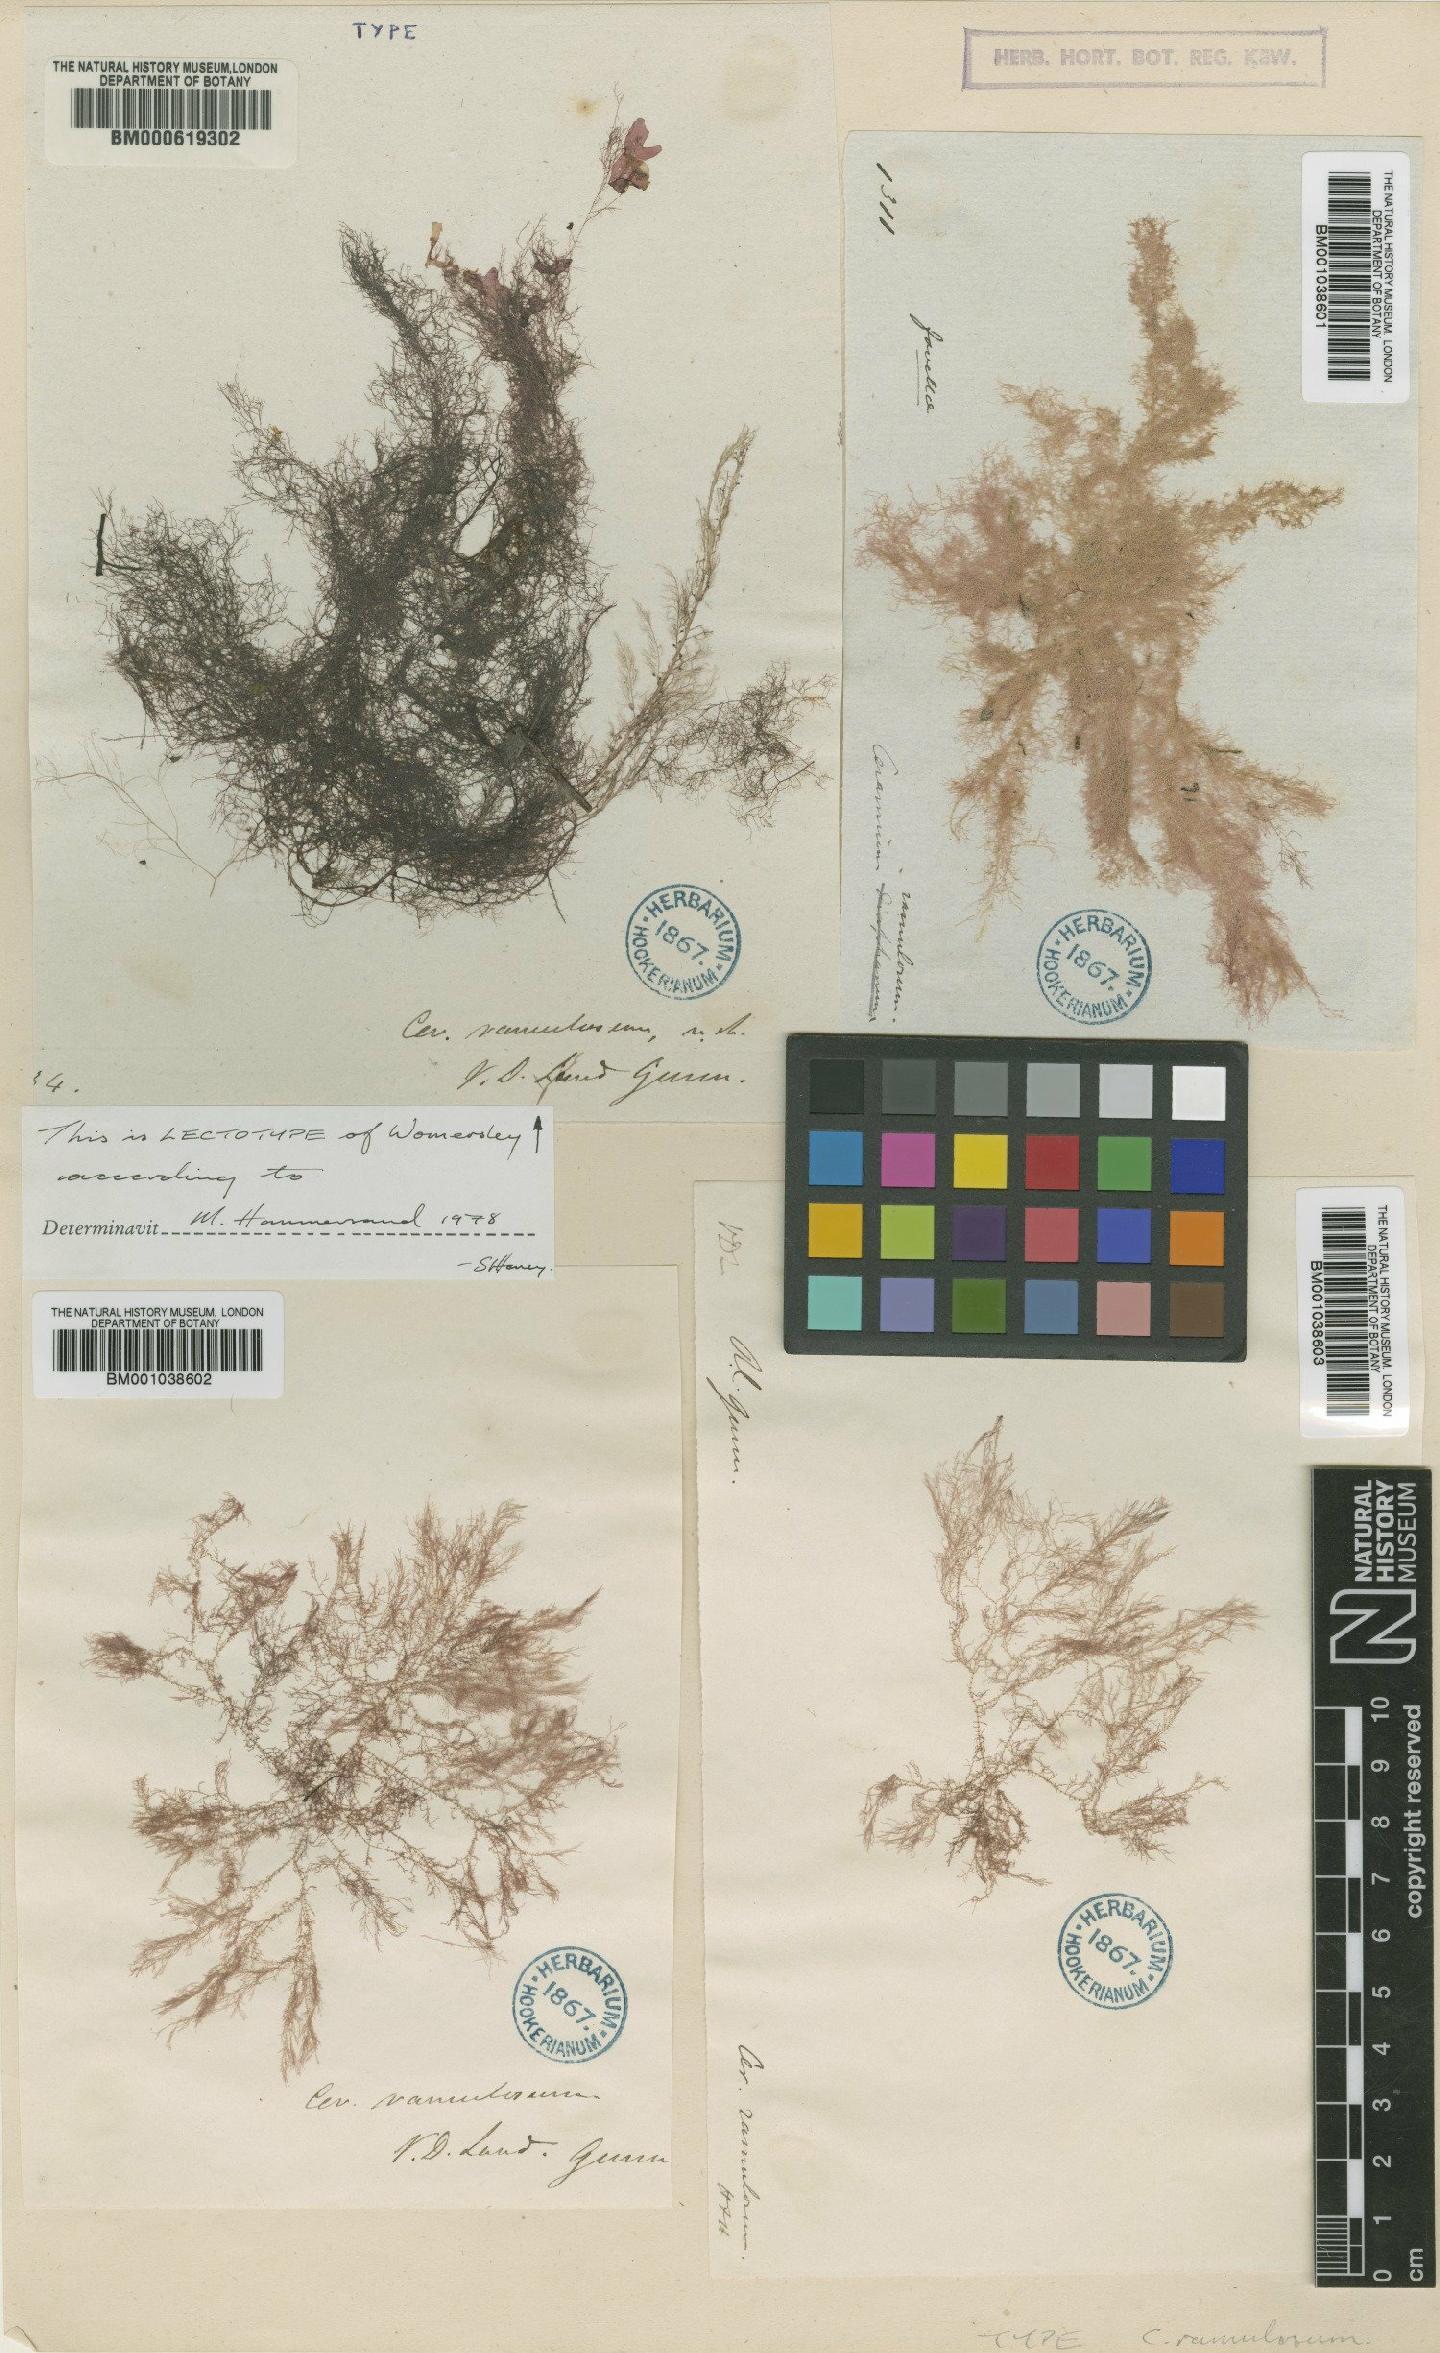 To NHMUK collection (Ceramium cliftonianum J.Agardh; Lectotype; NHMUK:ecatalogue:4790695)